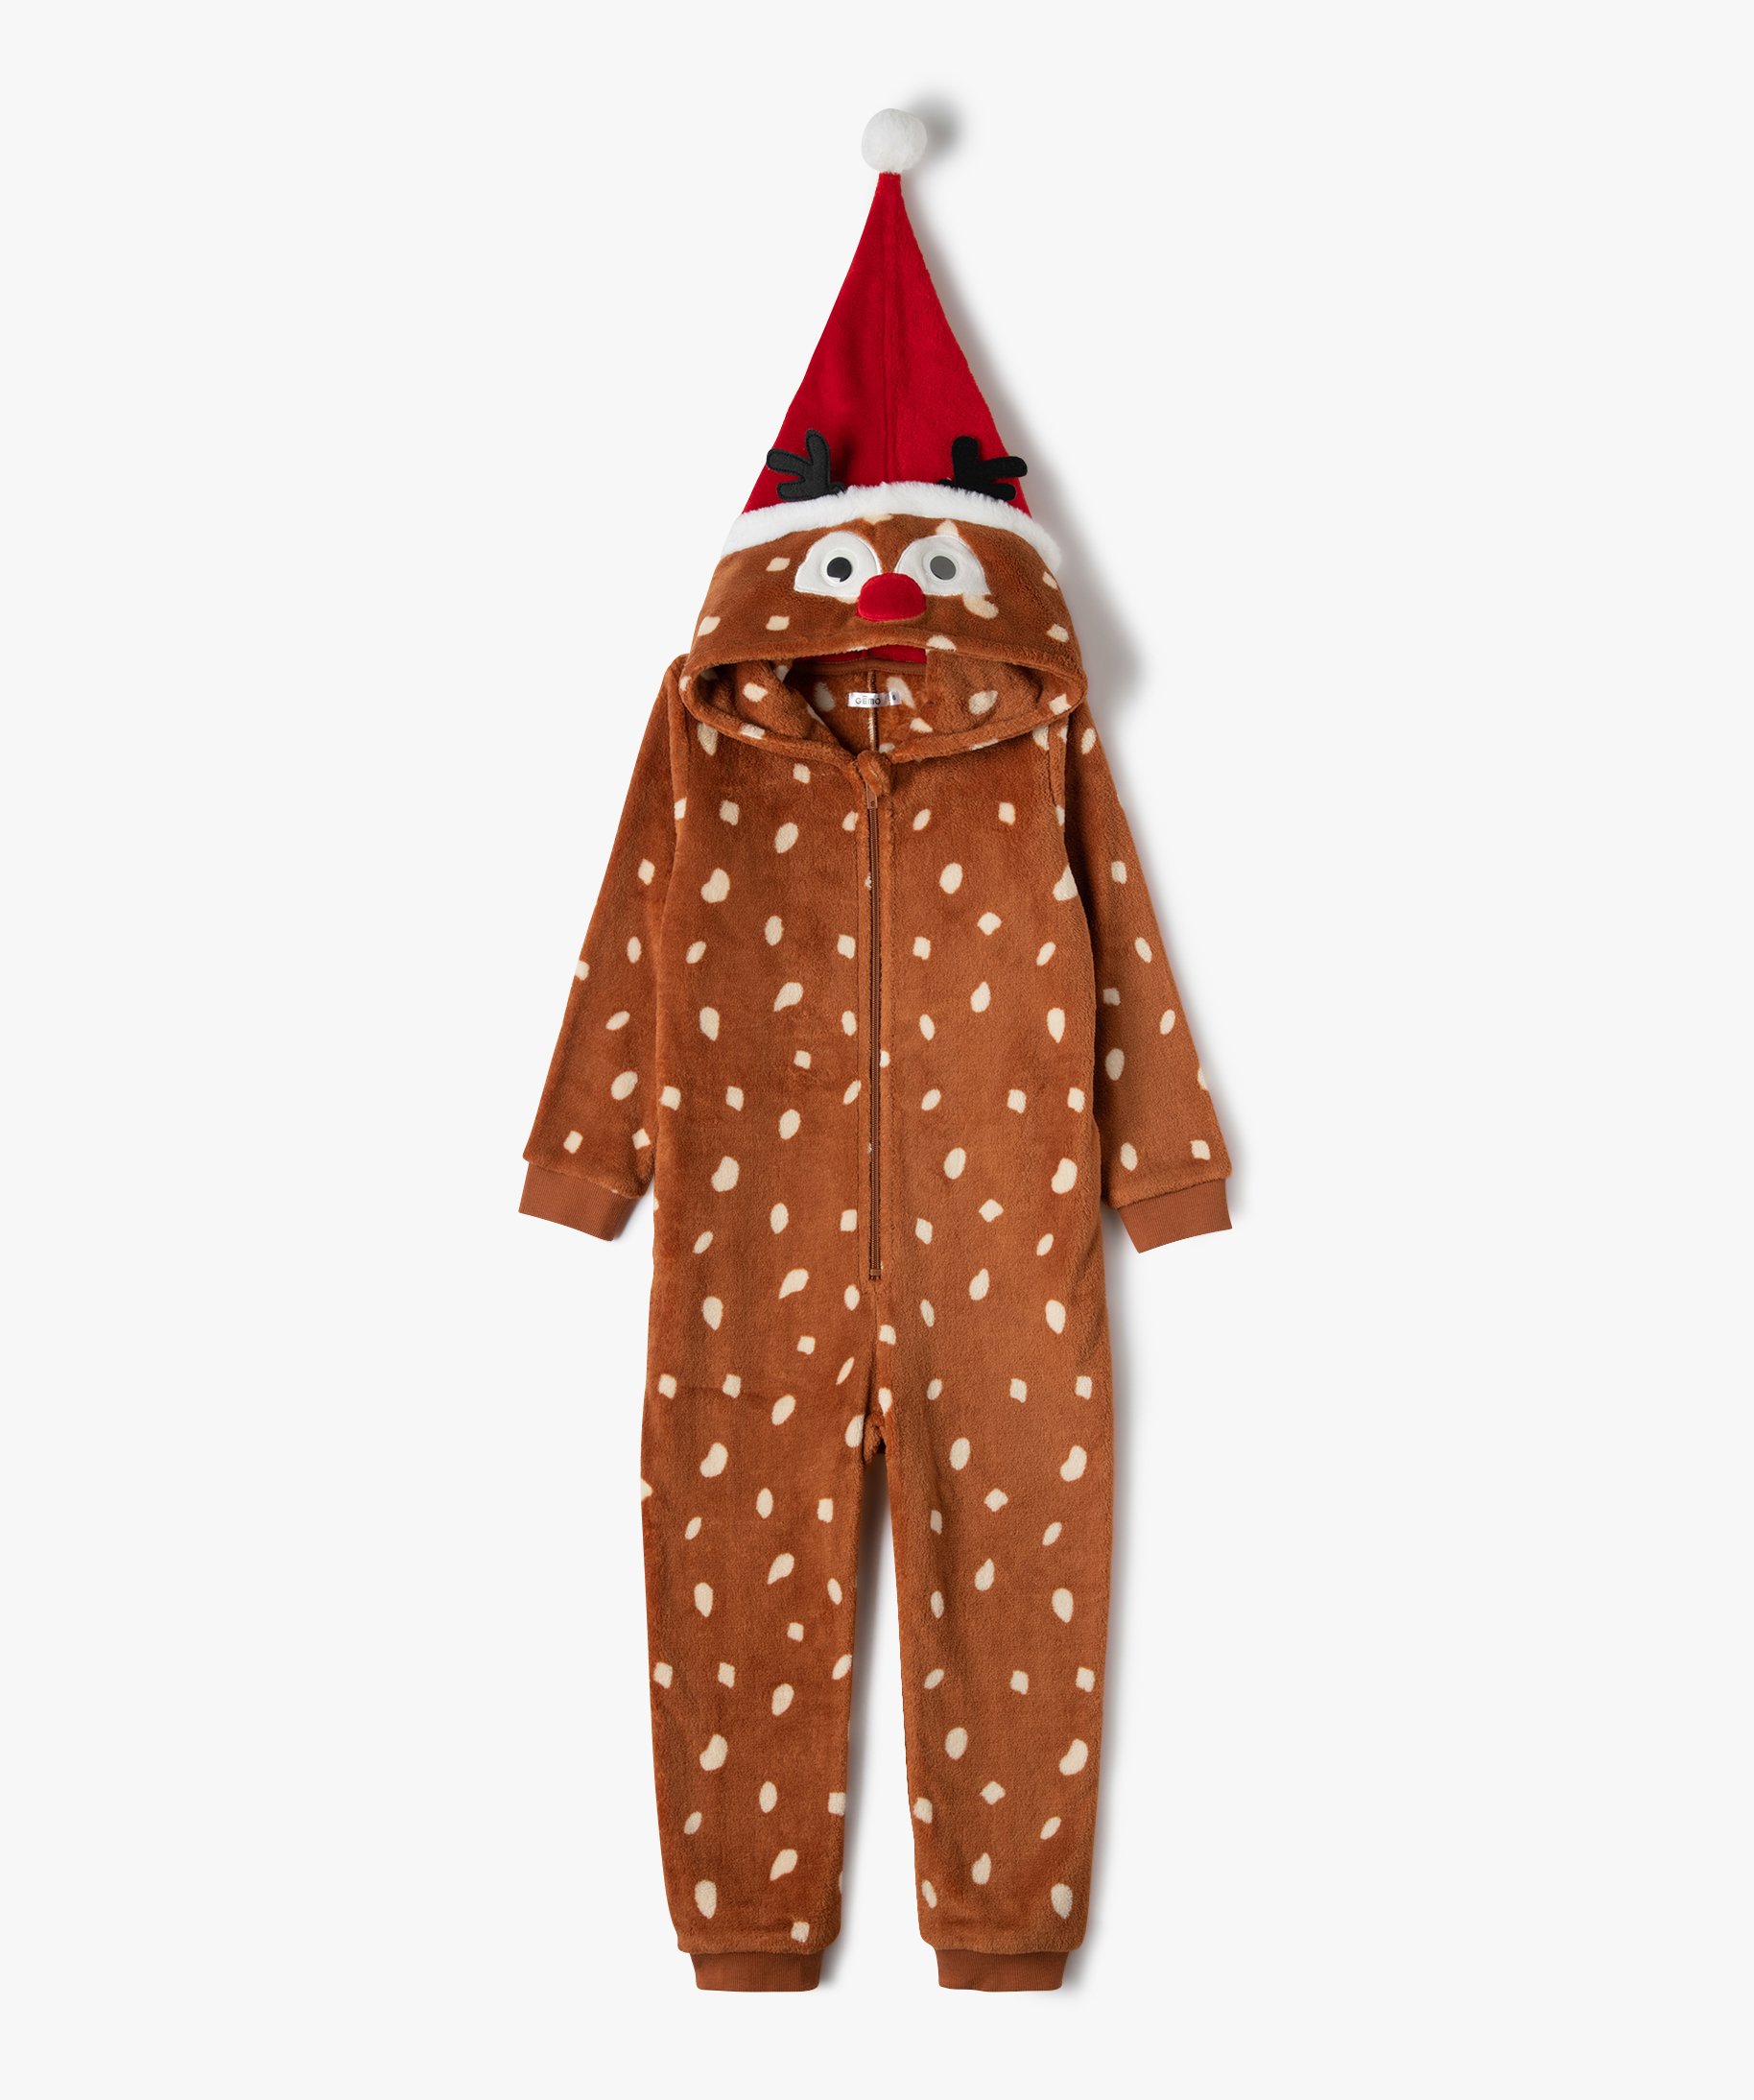 Personnalisé Bébé/Enfants Gilet Sleepsuit Pyjama T-shirt Mon 1st Noël Pudding